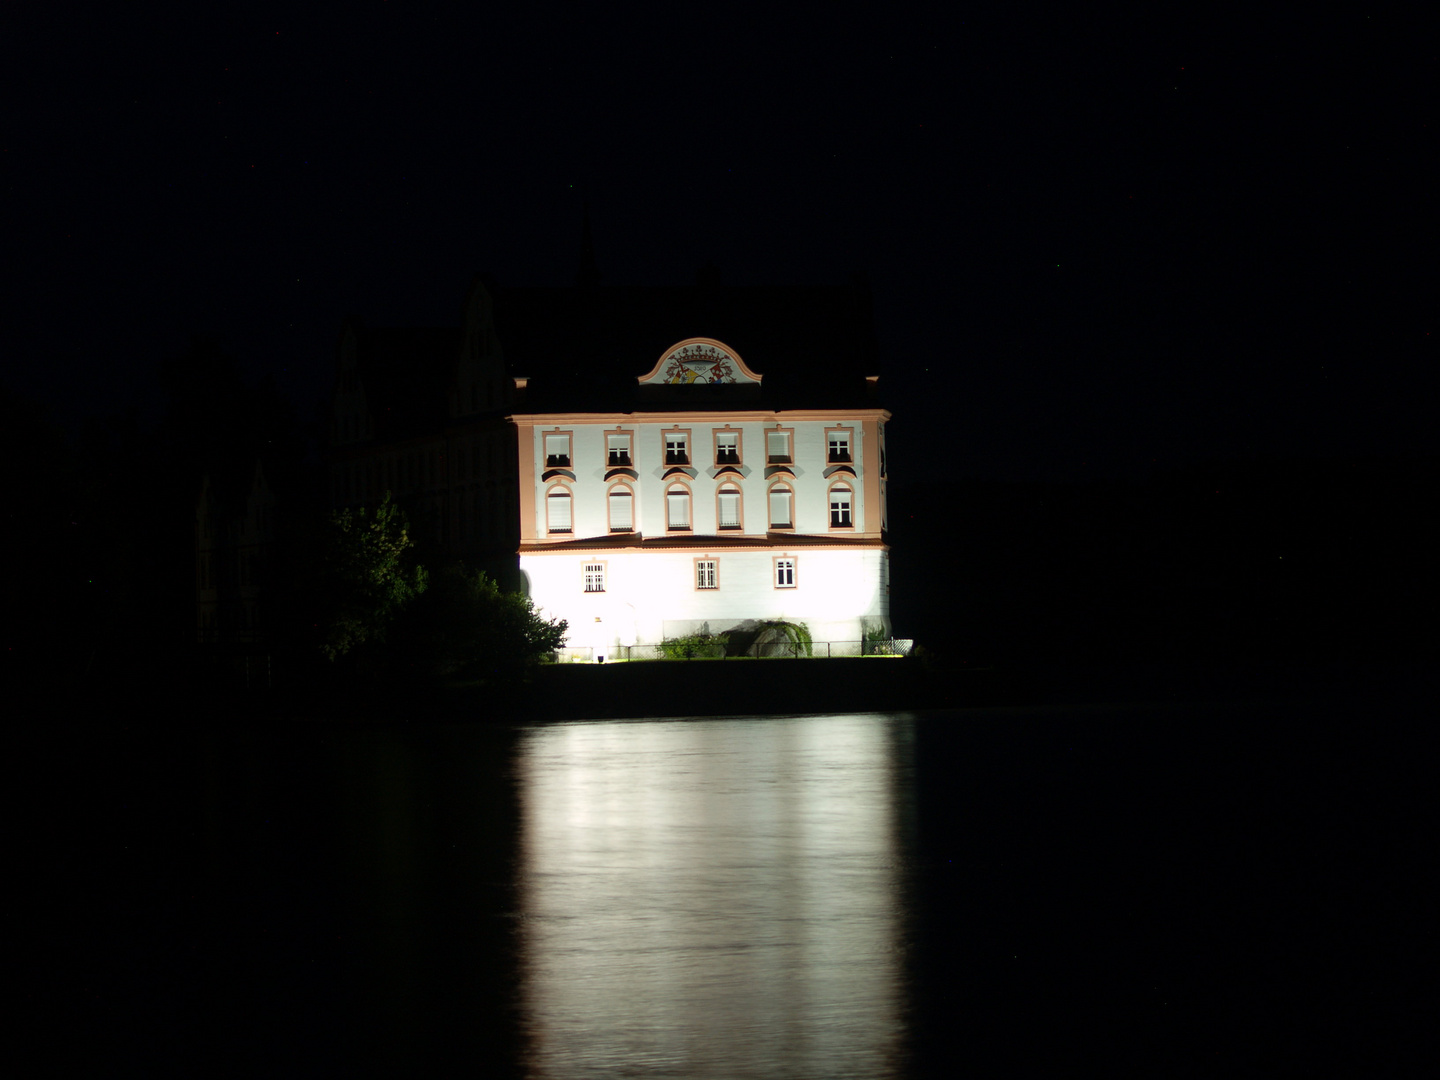 Kloster Neuhaus bei Nacht